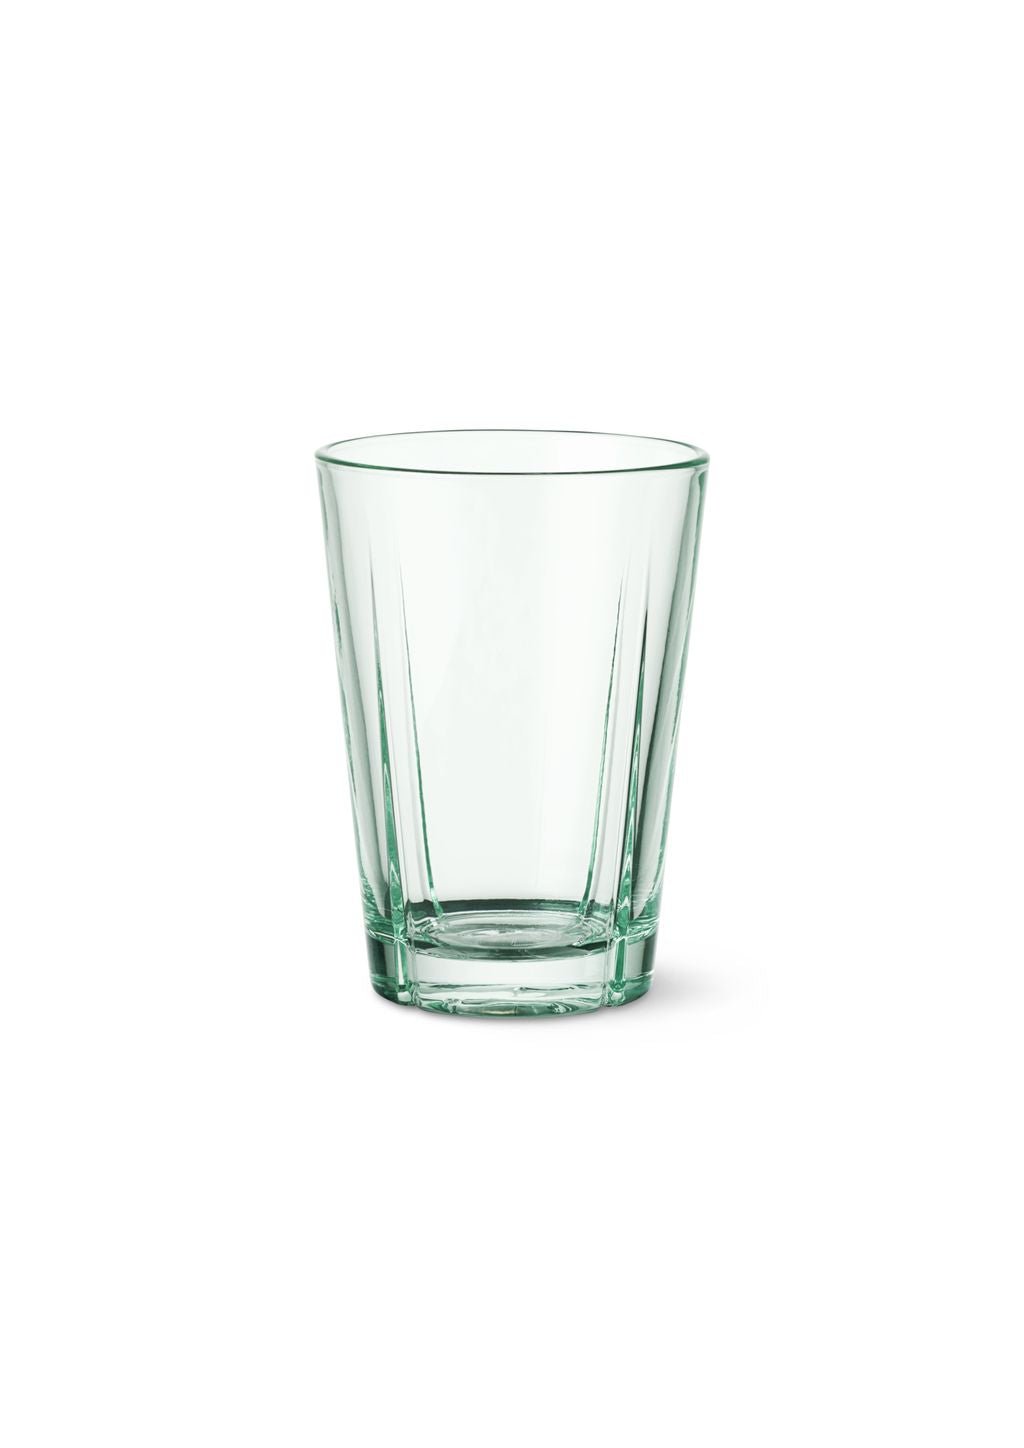 Rosendahl GC Recykling Water Glass 22 Cl Clear Green, 4 szt.